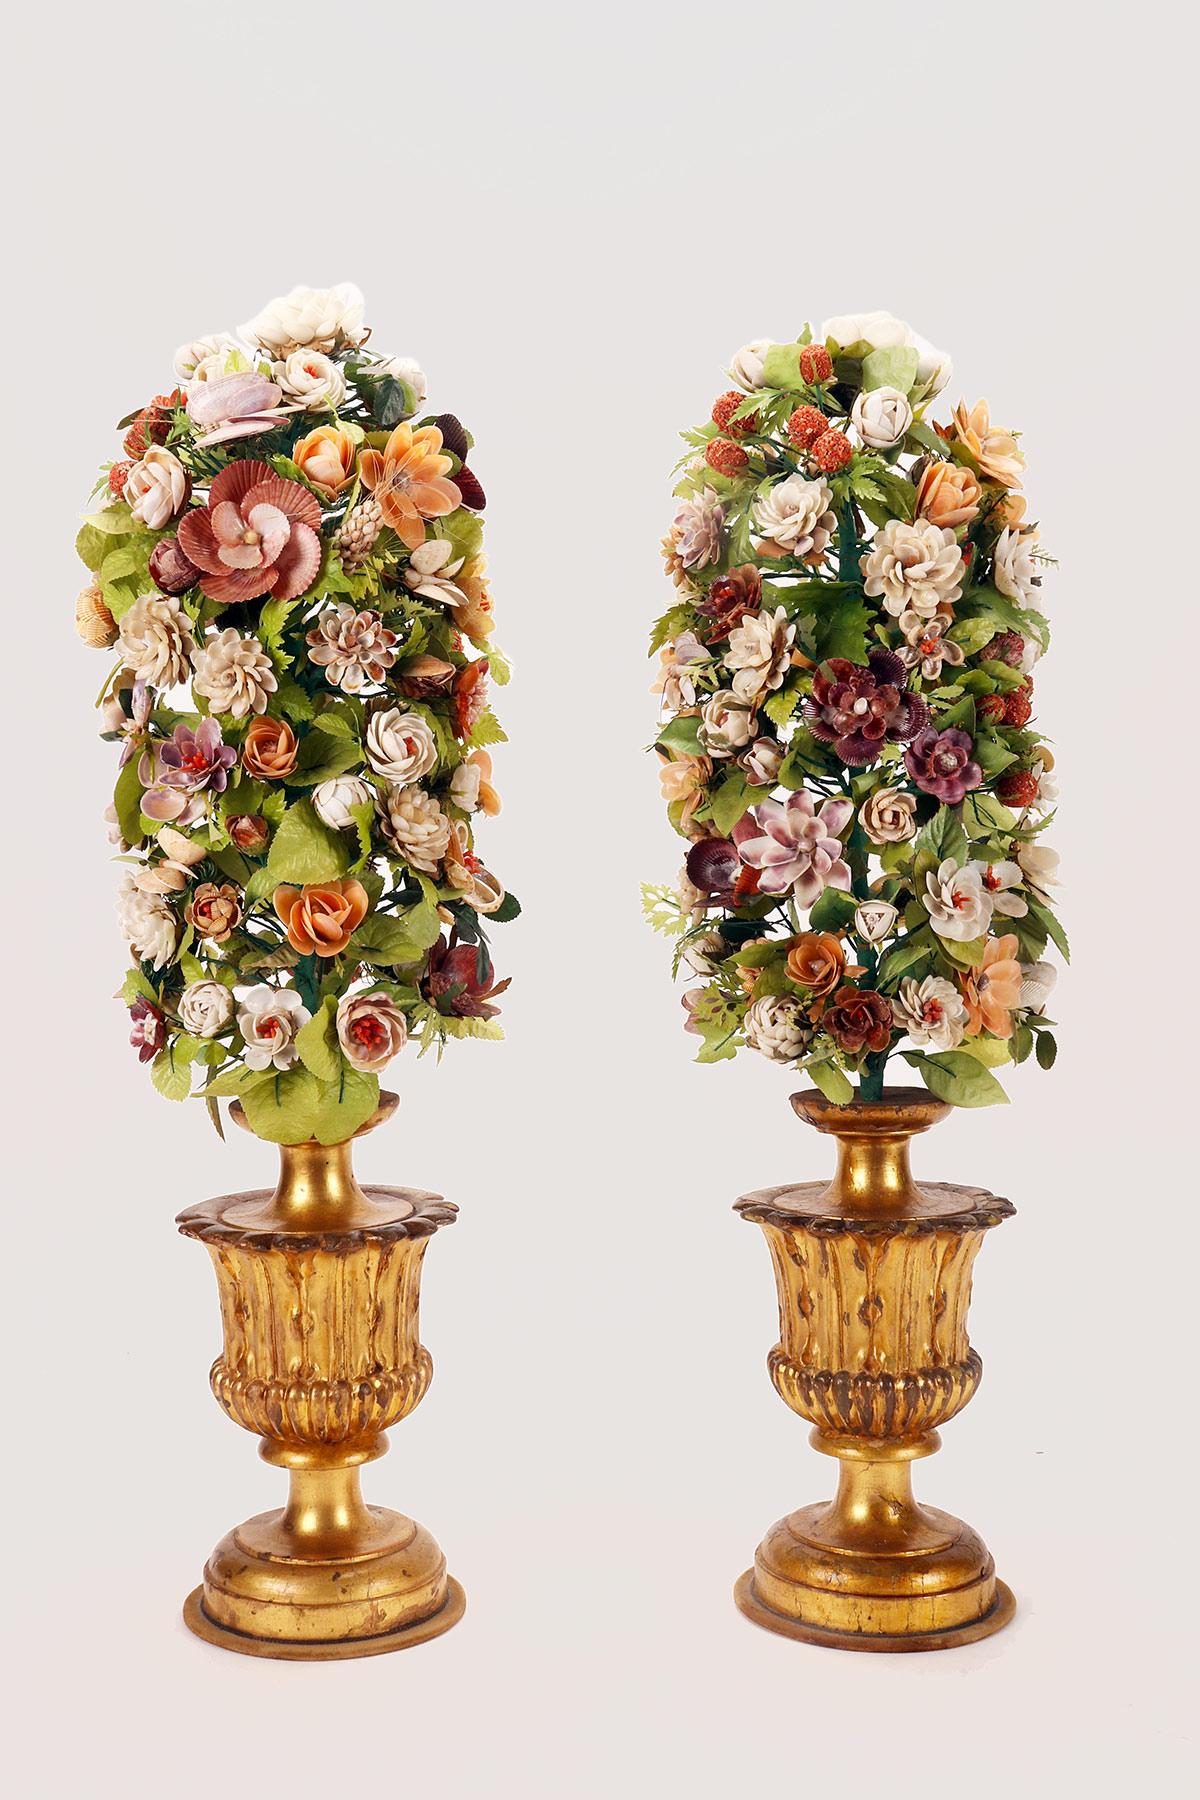 Ein viktorianisches Paar Blumenarrangements aus Muscheln und Korallen auf geschnitztem und vergoldetem Holzsockel. Jede der beiden Kompositionen hat einen Sockel aus geschnitztem und vergoldetem Obstholz, der die Vasenform mit einem komplexen Profil